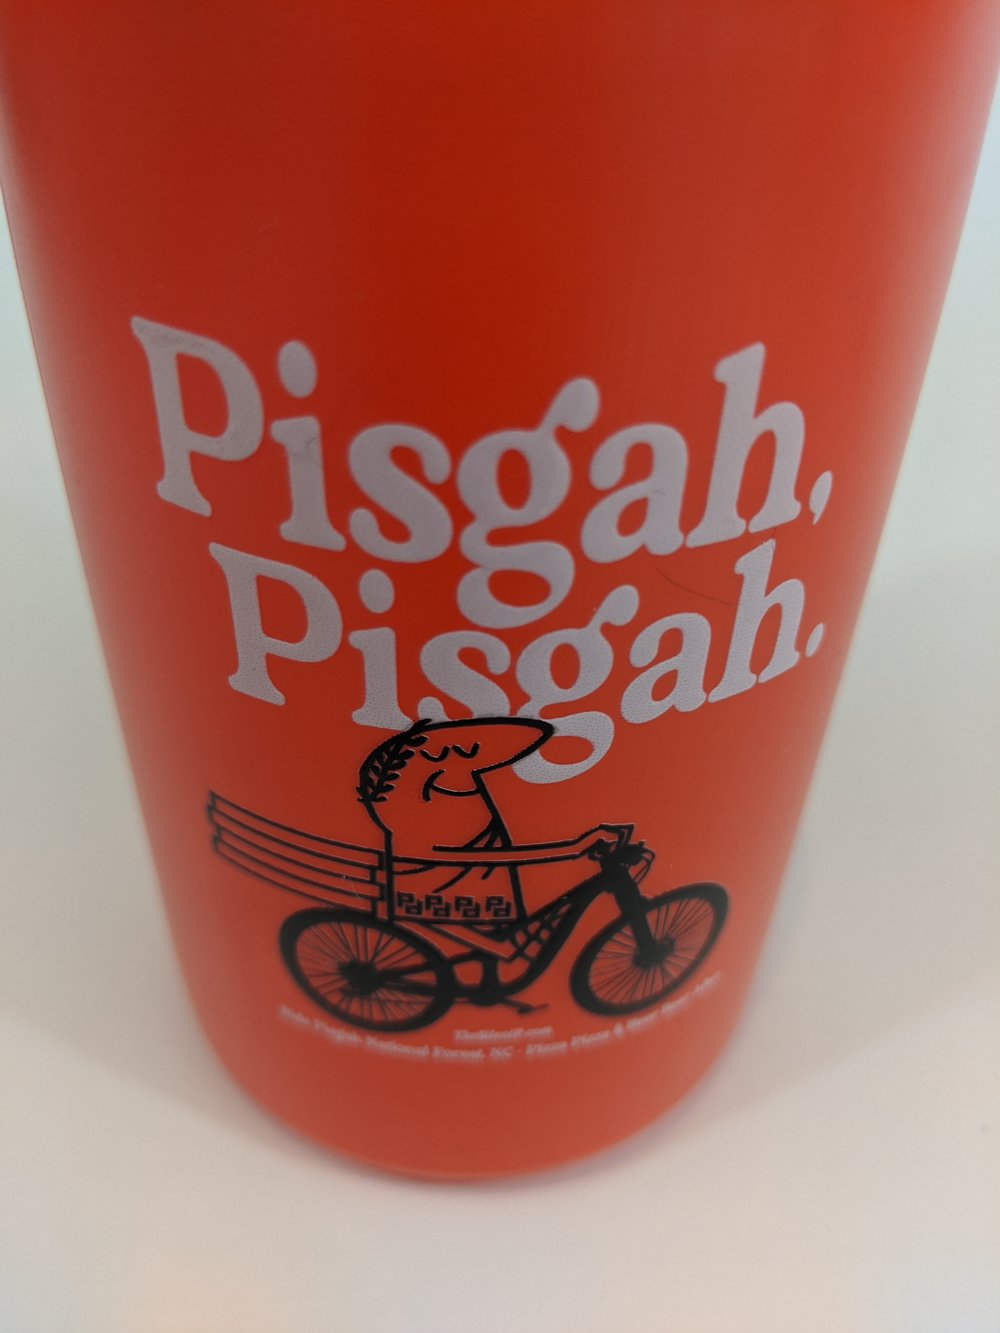 "Pisgah, Pisgah" Water Bottle